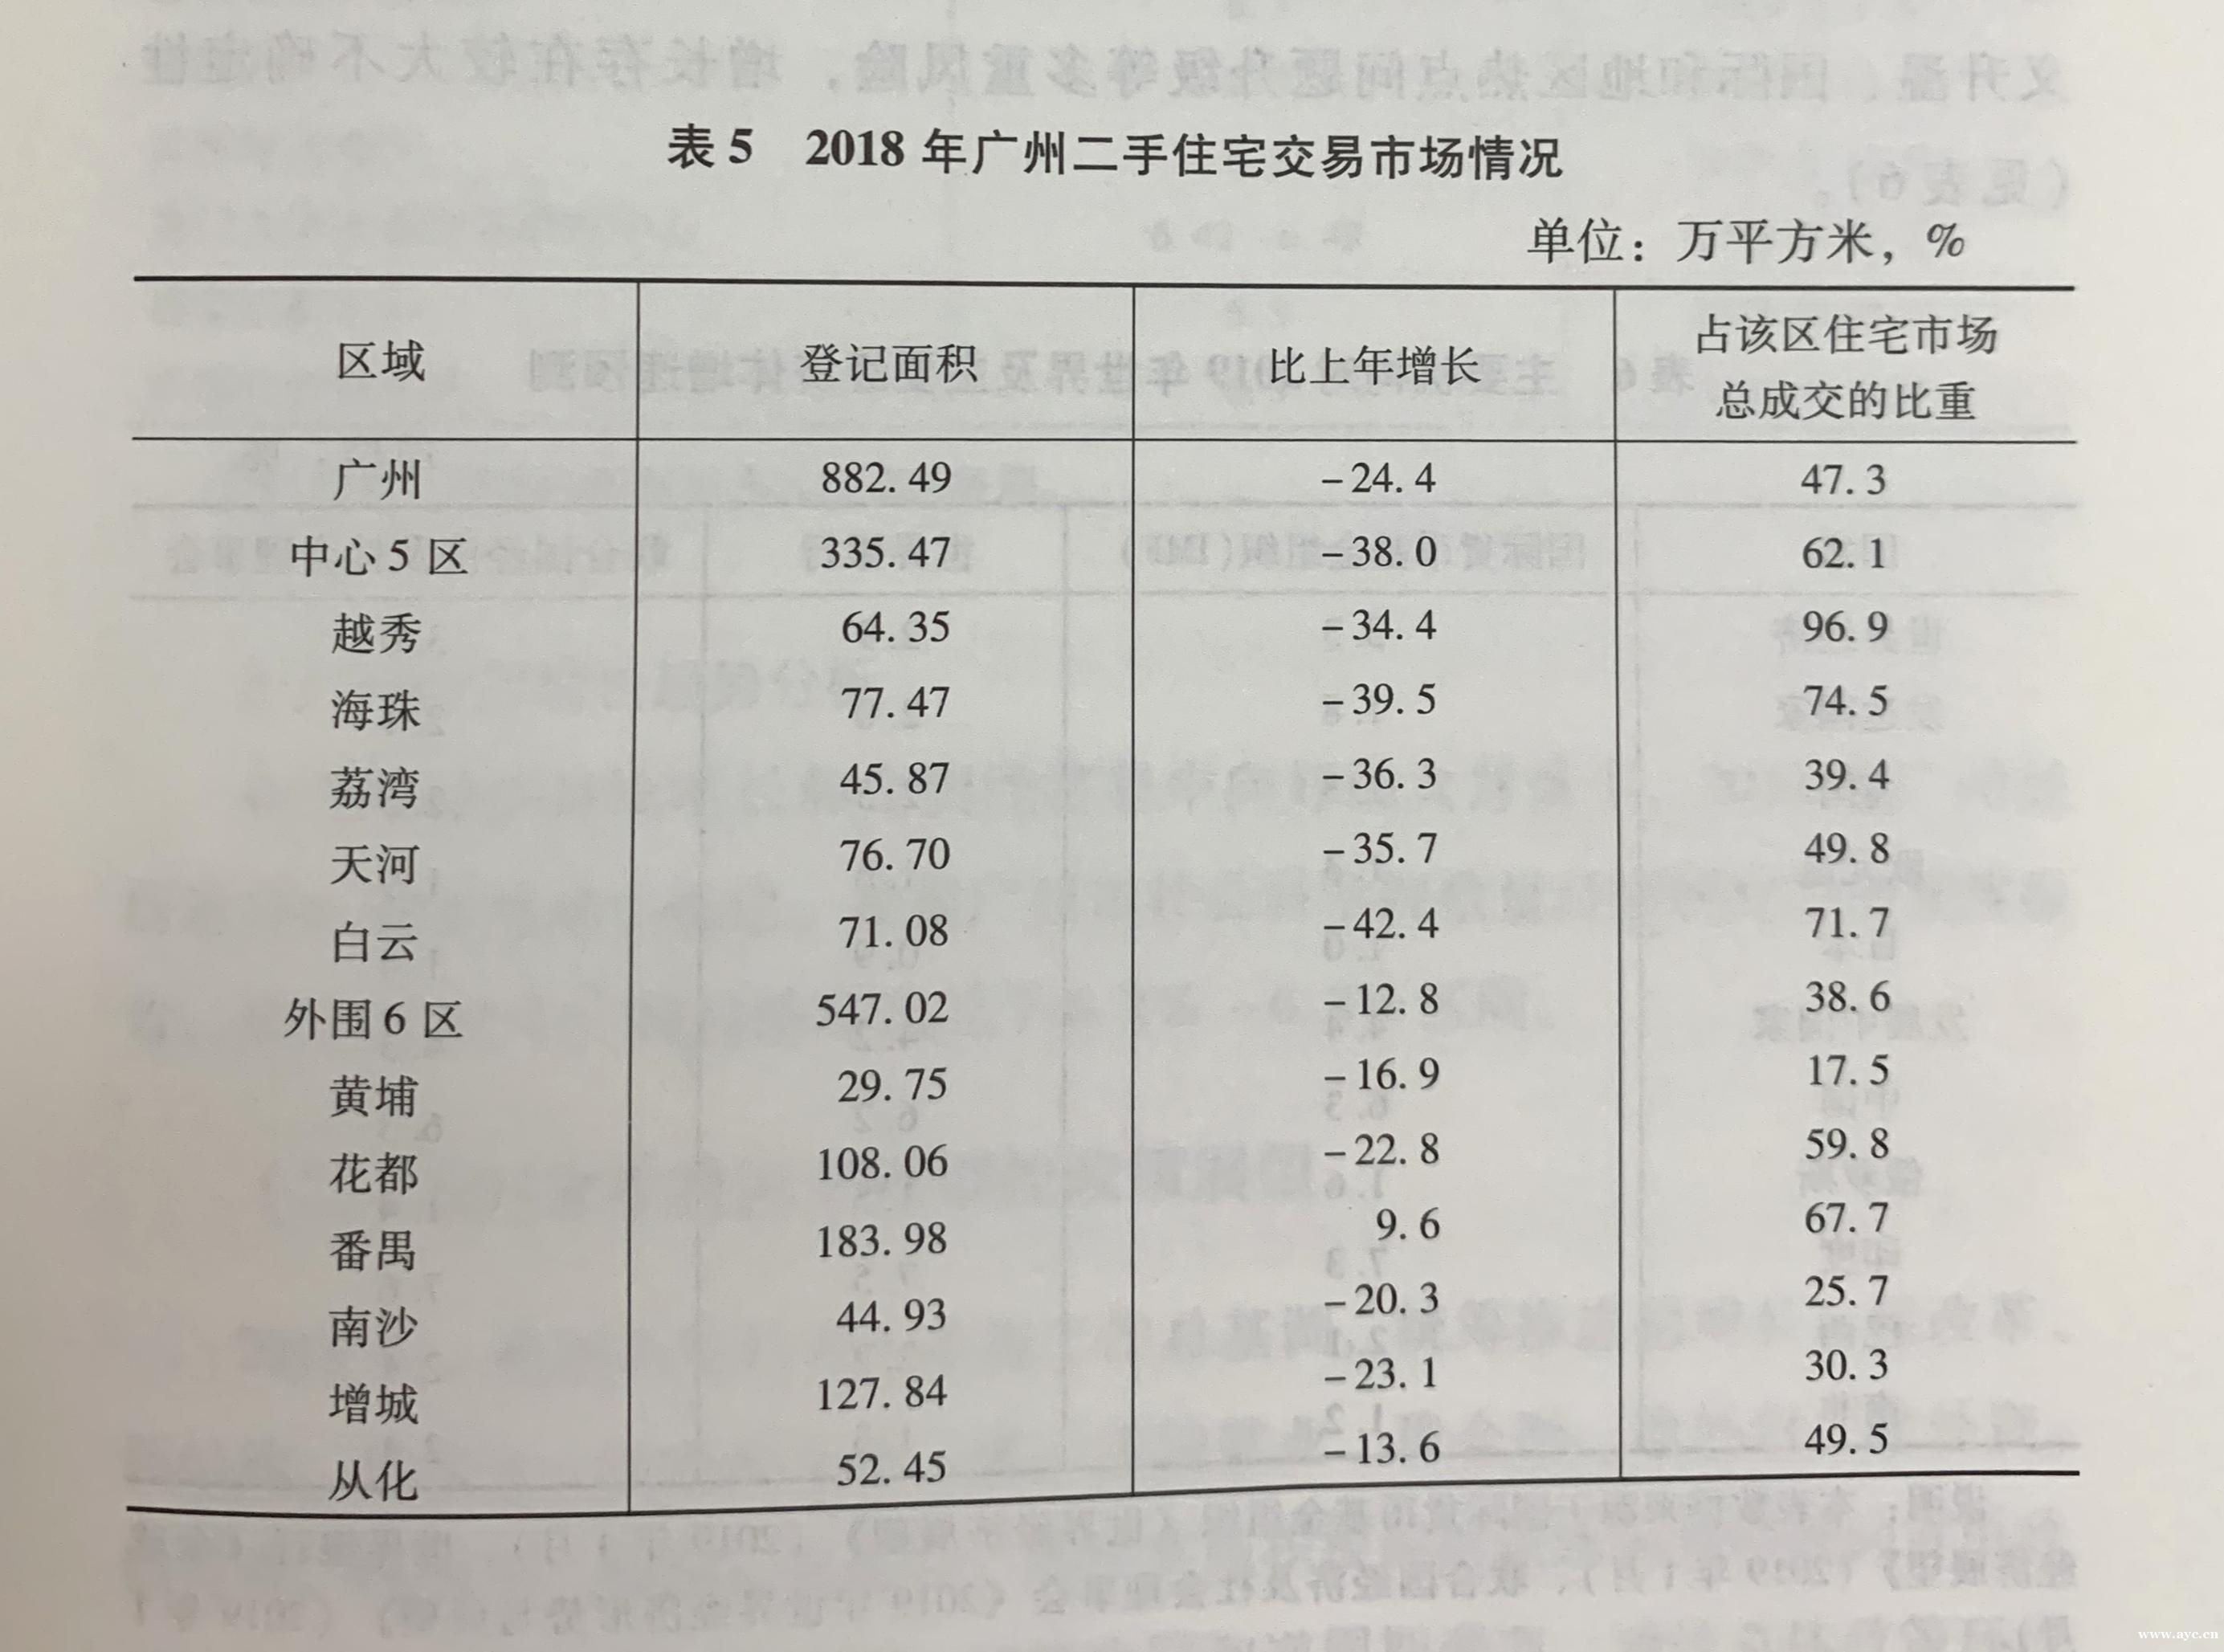 预计广州2019年GDP增长6.2%-6.8% 保持基本稳定